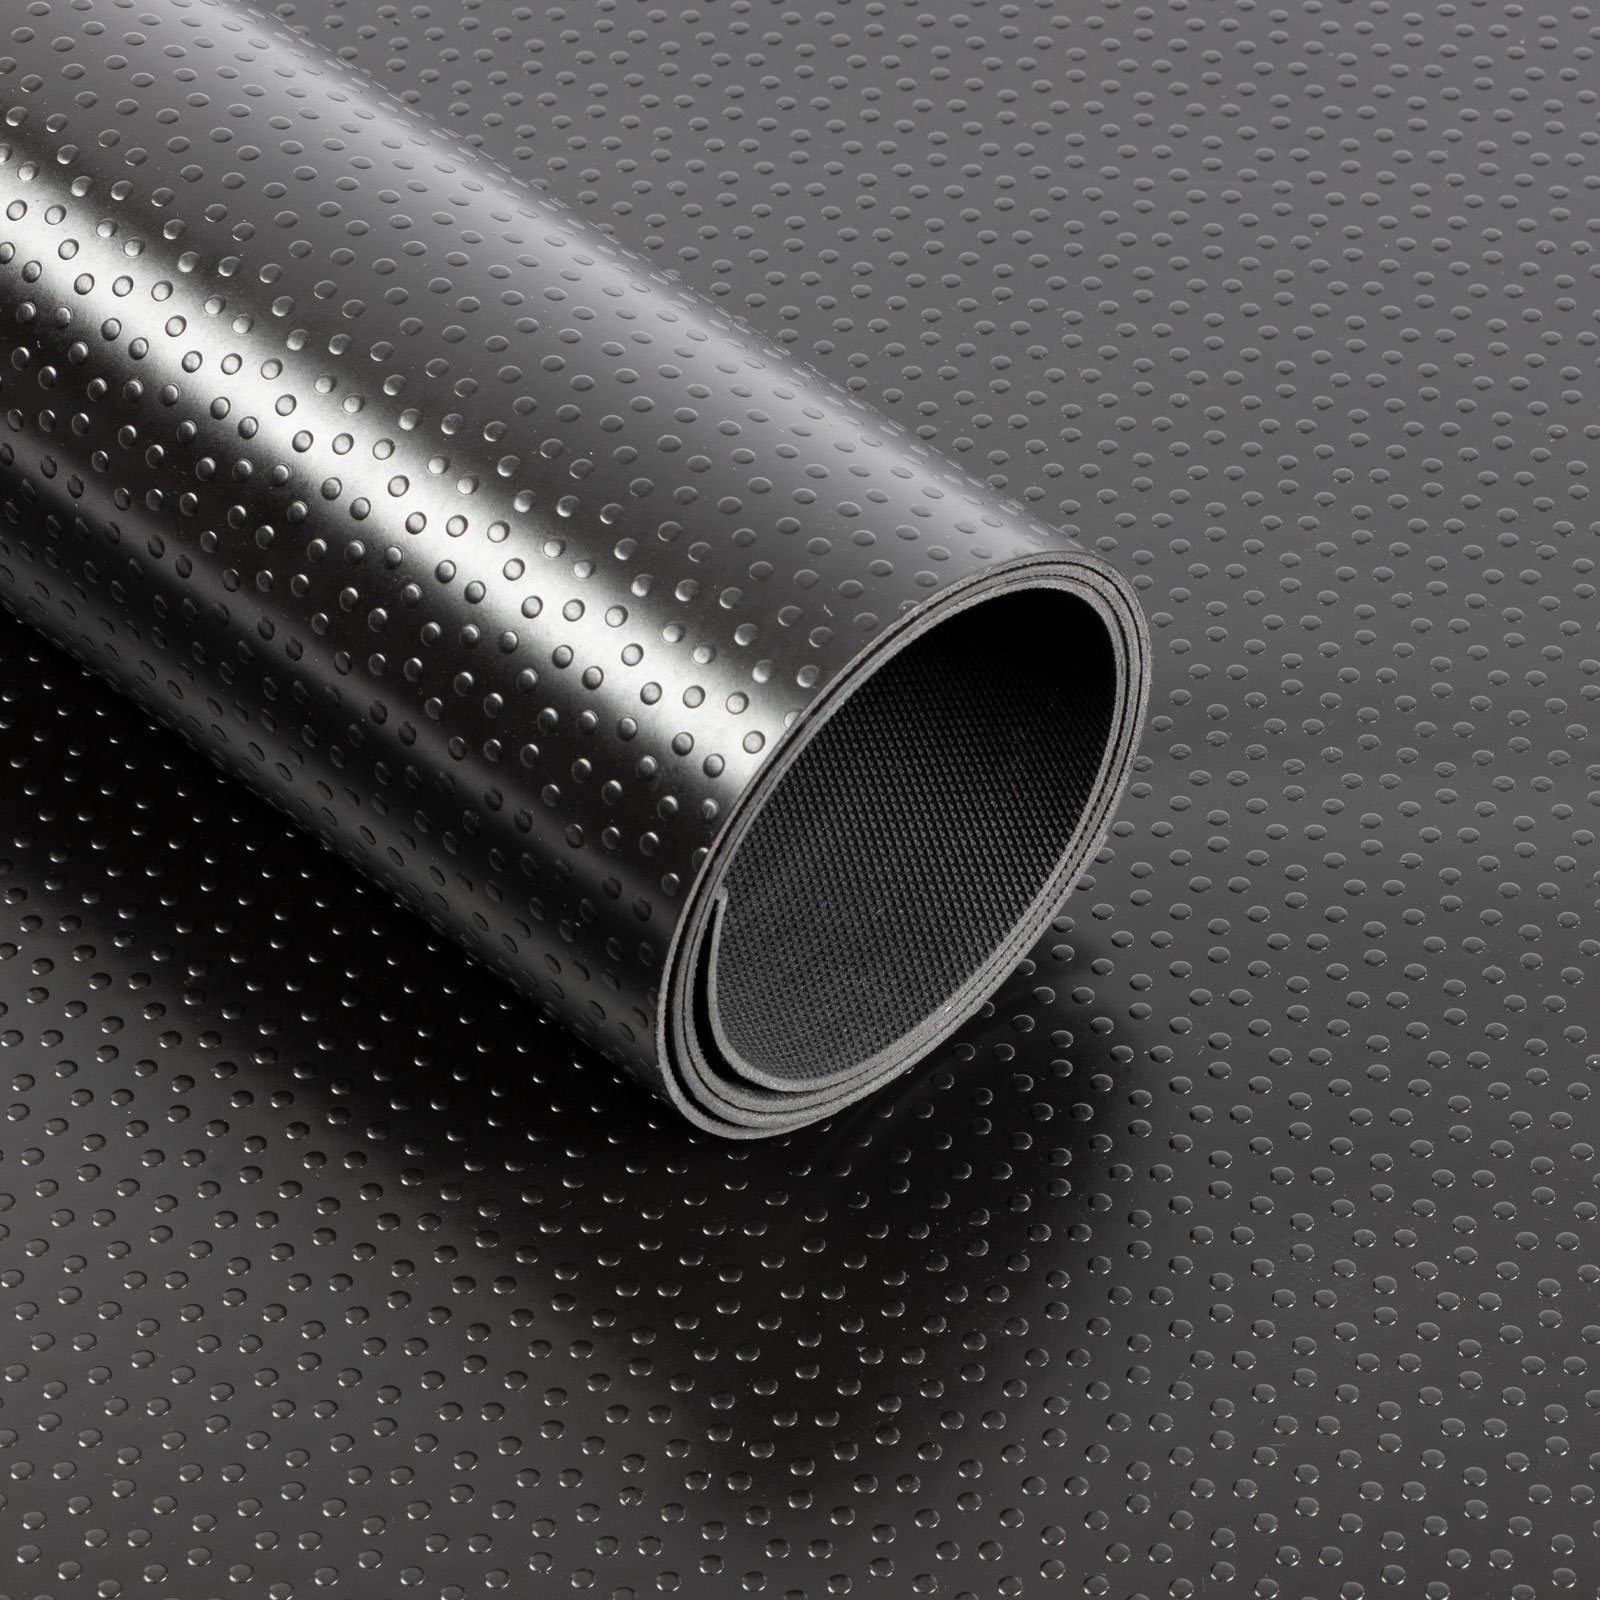 Karat Bodenschutzmatte PVC-Bodenbelag Punkte, Schwarz, Universell einsetzbar, verschiedene Größen